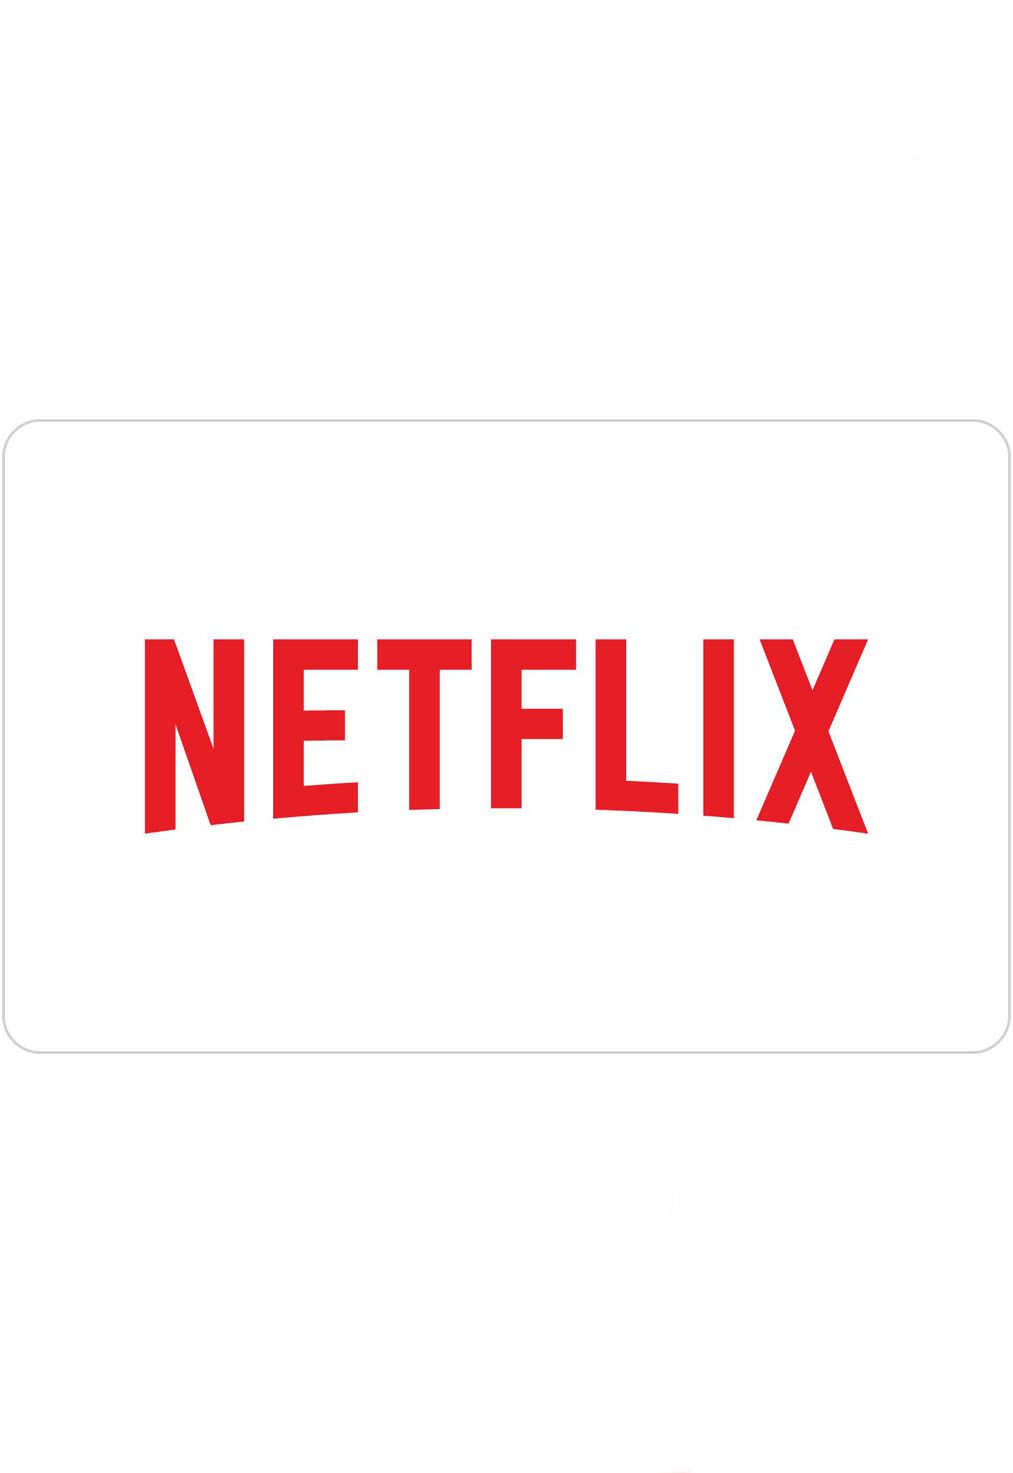 Cartão Presente Netflix - Cartão Pré-Pago para Assinatura Netflix